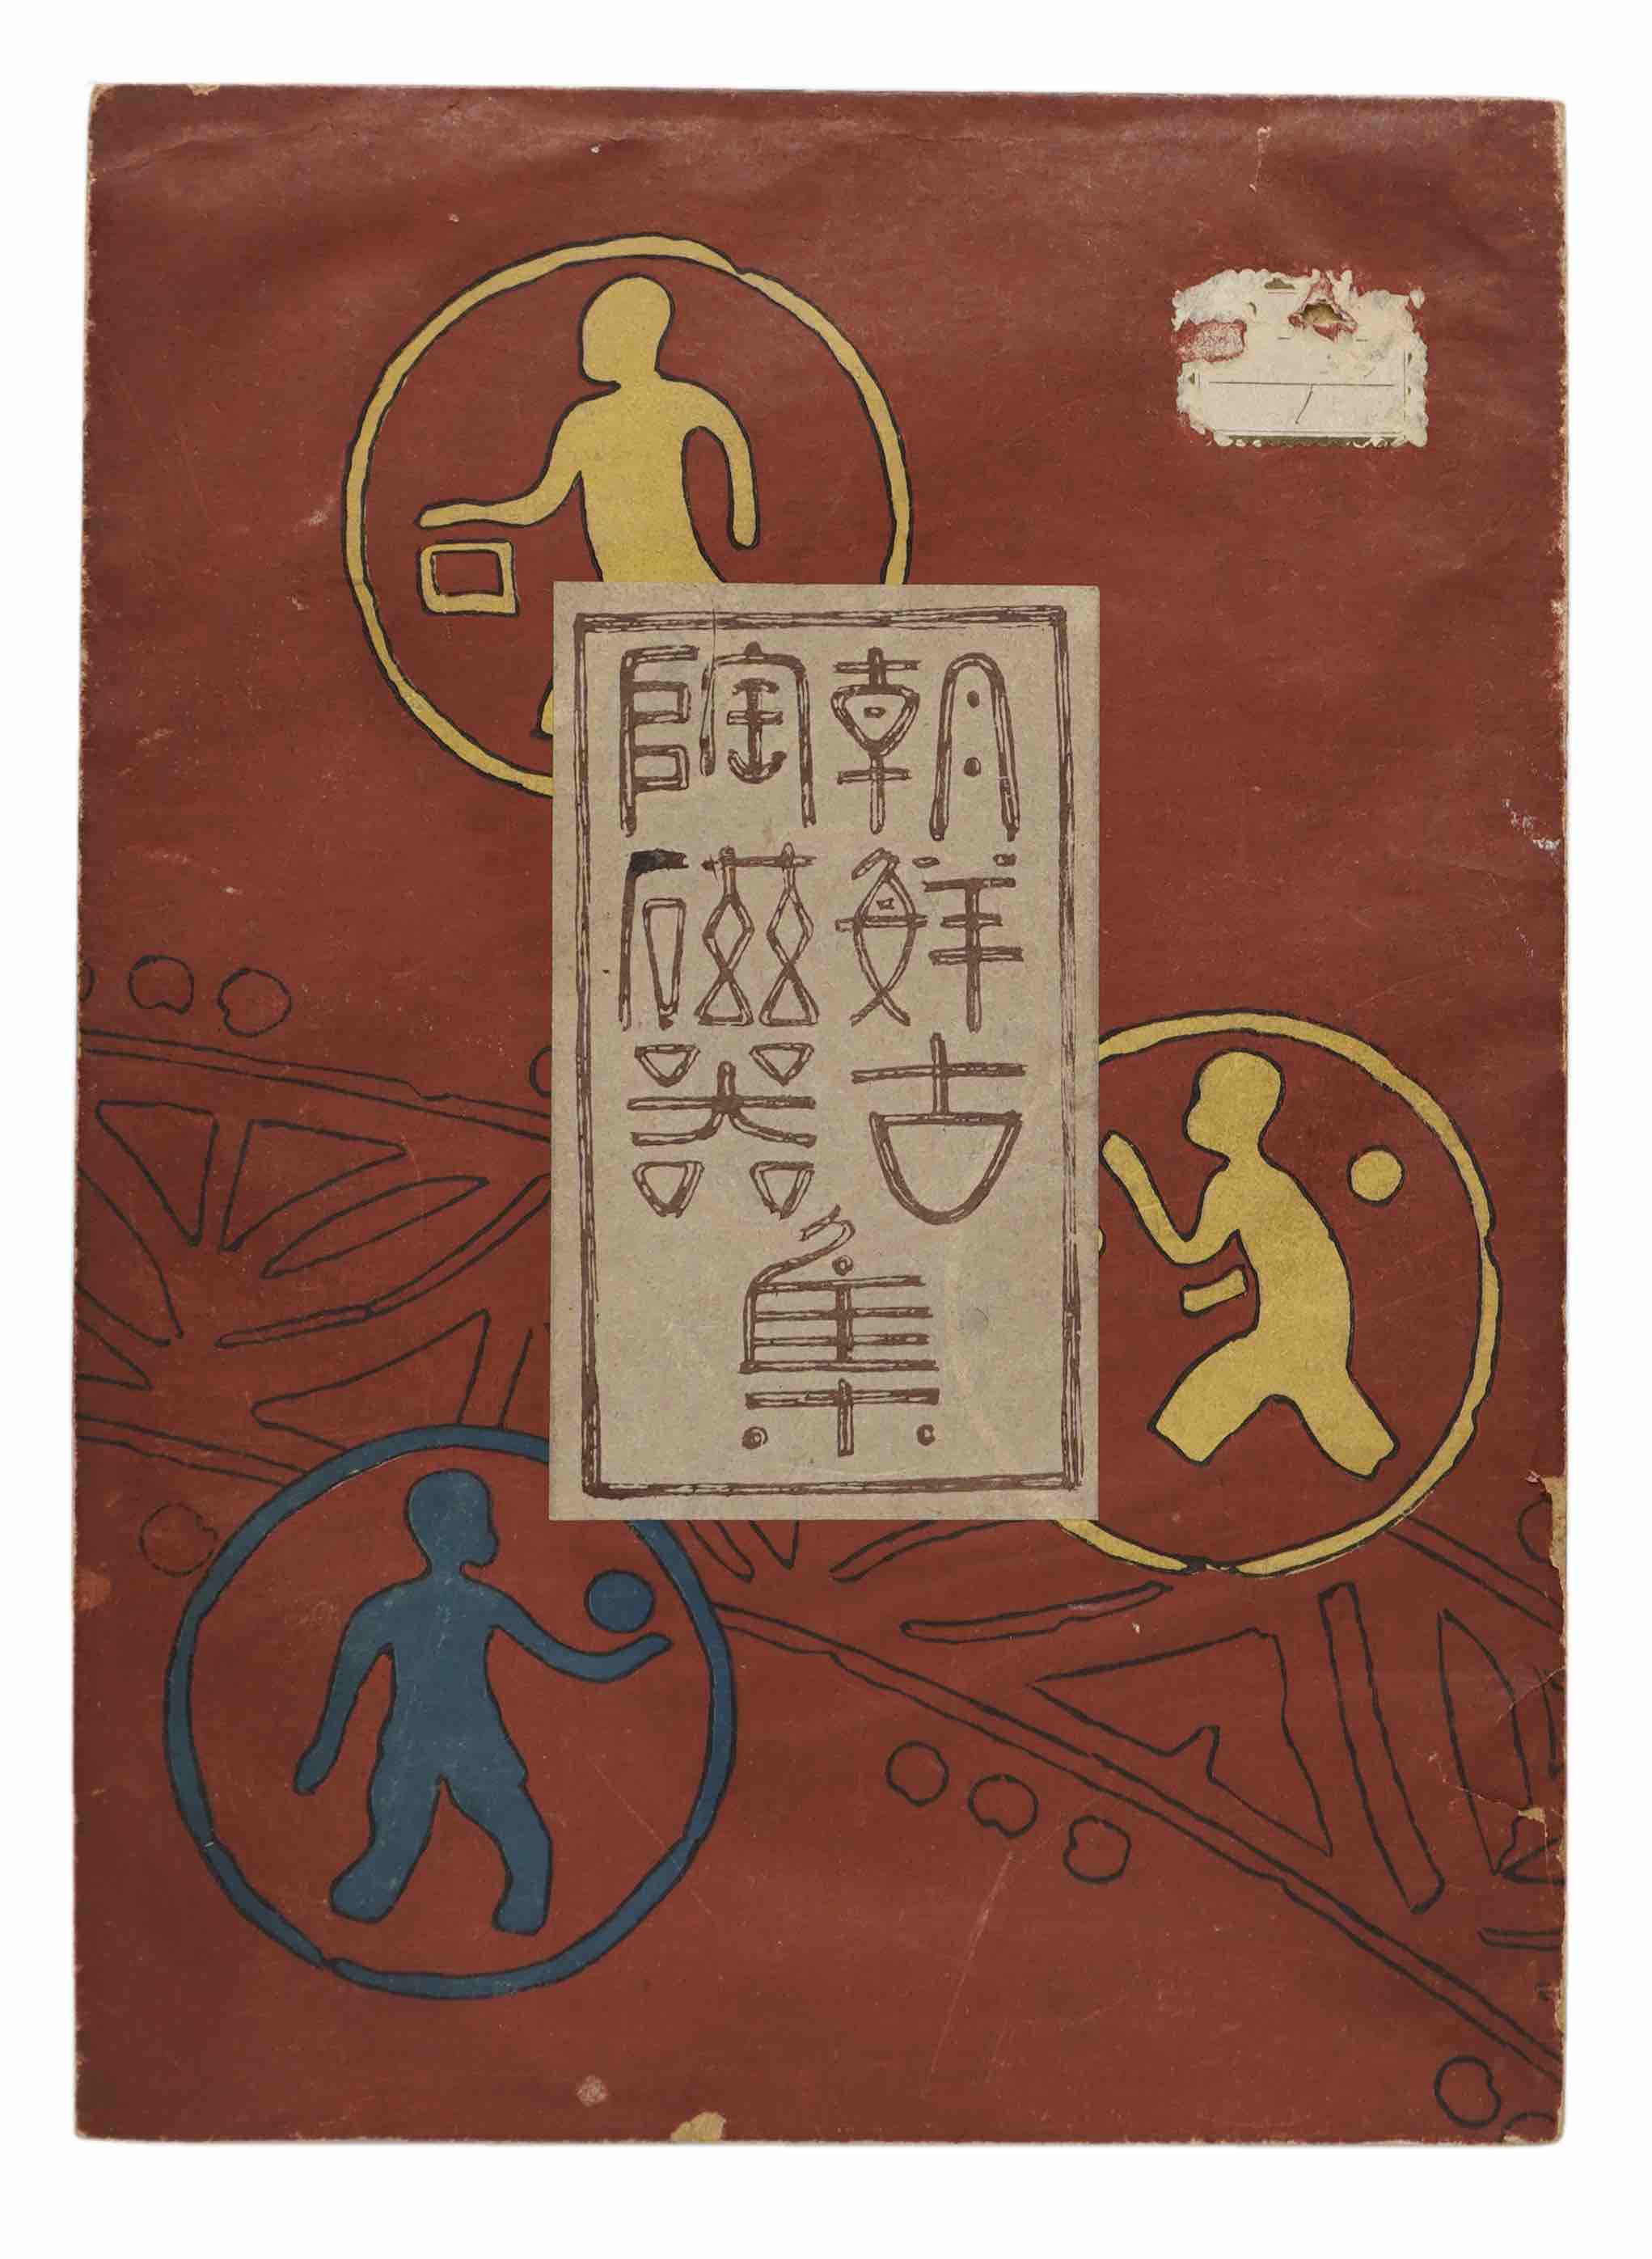 KUND, SAWADA (Ed.) / SAWADA, SIICHIRO (Artist): -  Ch sen ko t jiki-sh          Collection of antique Korean ceramics. Kyoto, Unsdo, Taisho 13 (1924).